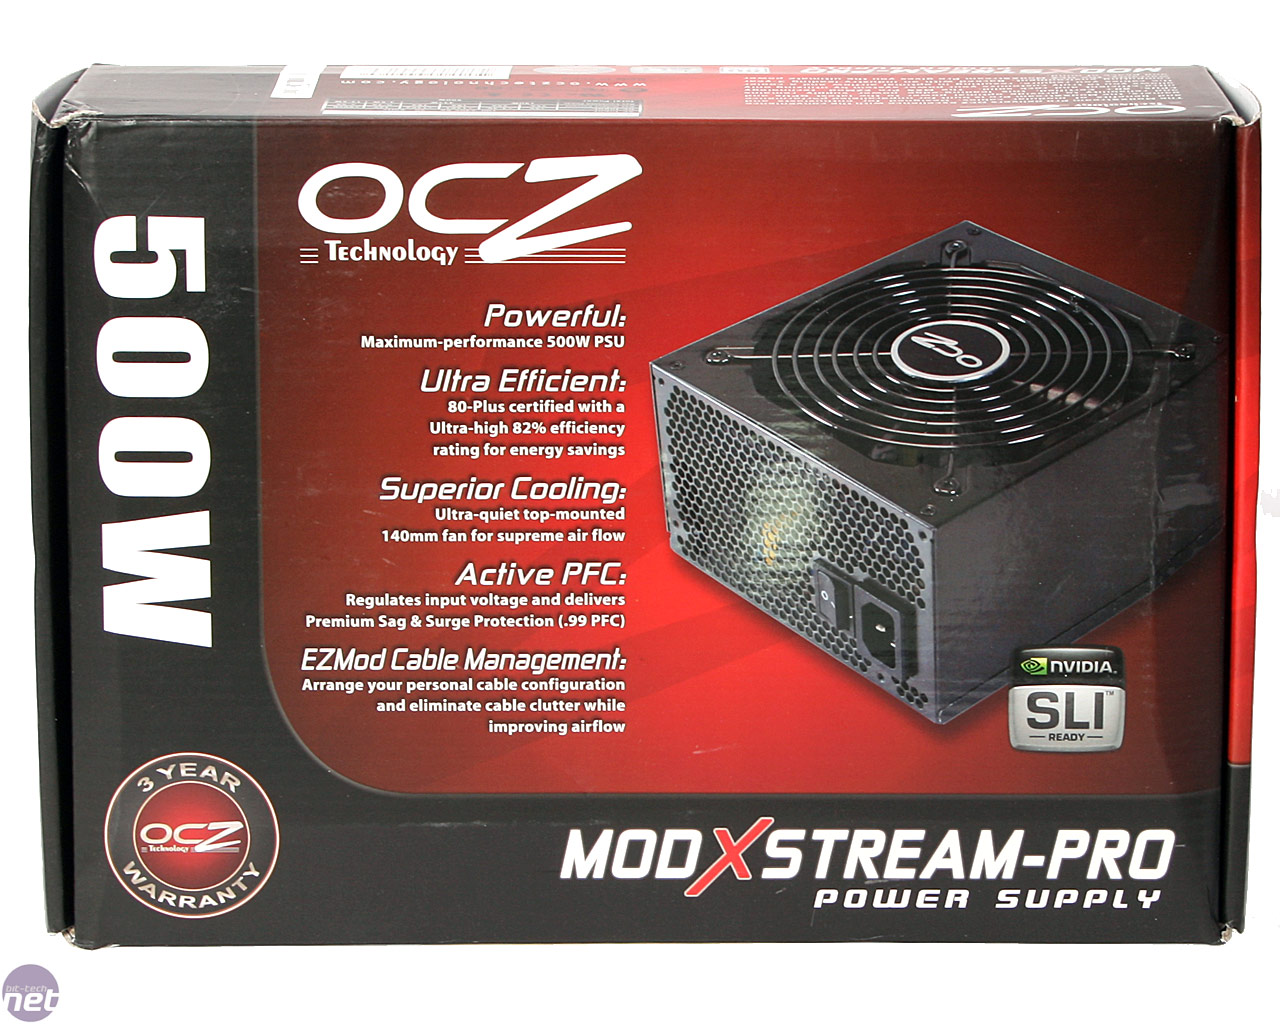 OCZ PowerStream 520W PSU - Legit Reviews